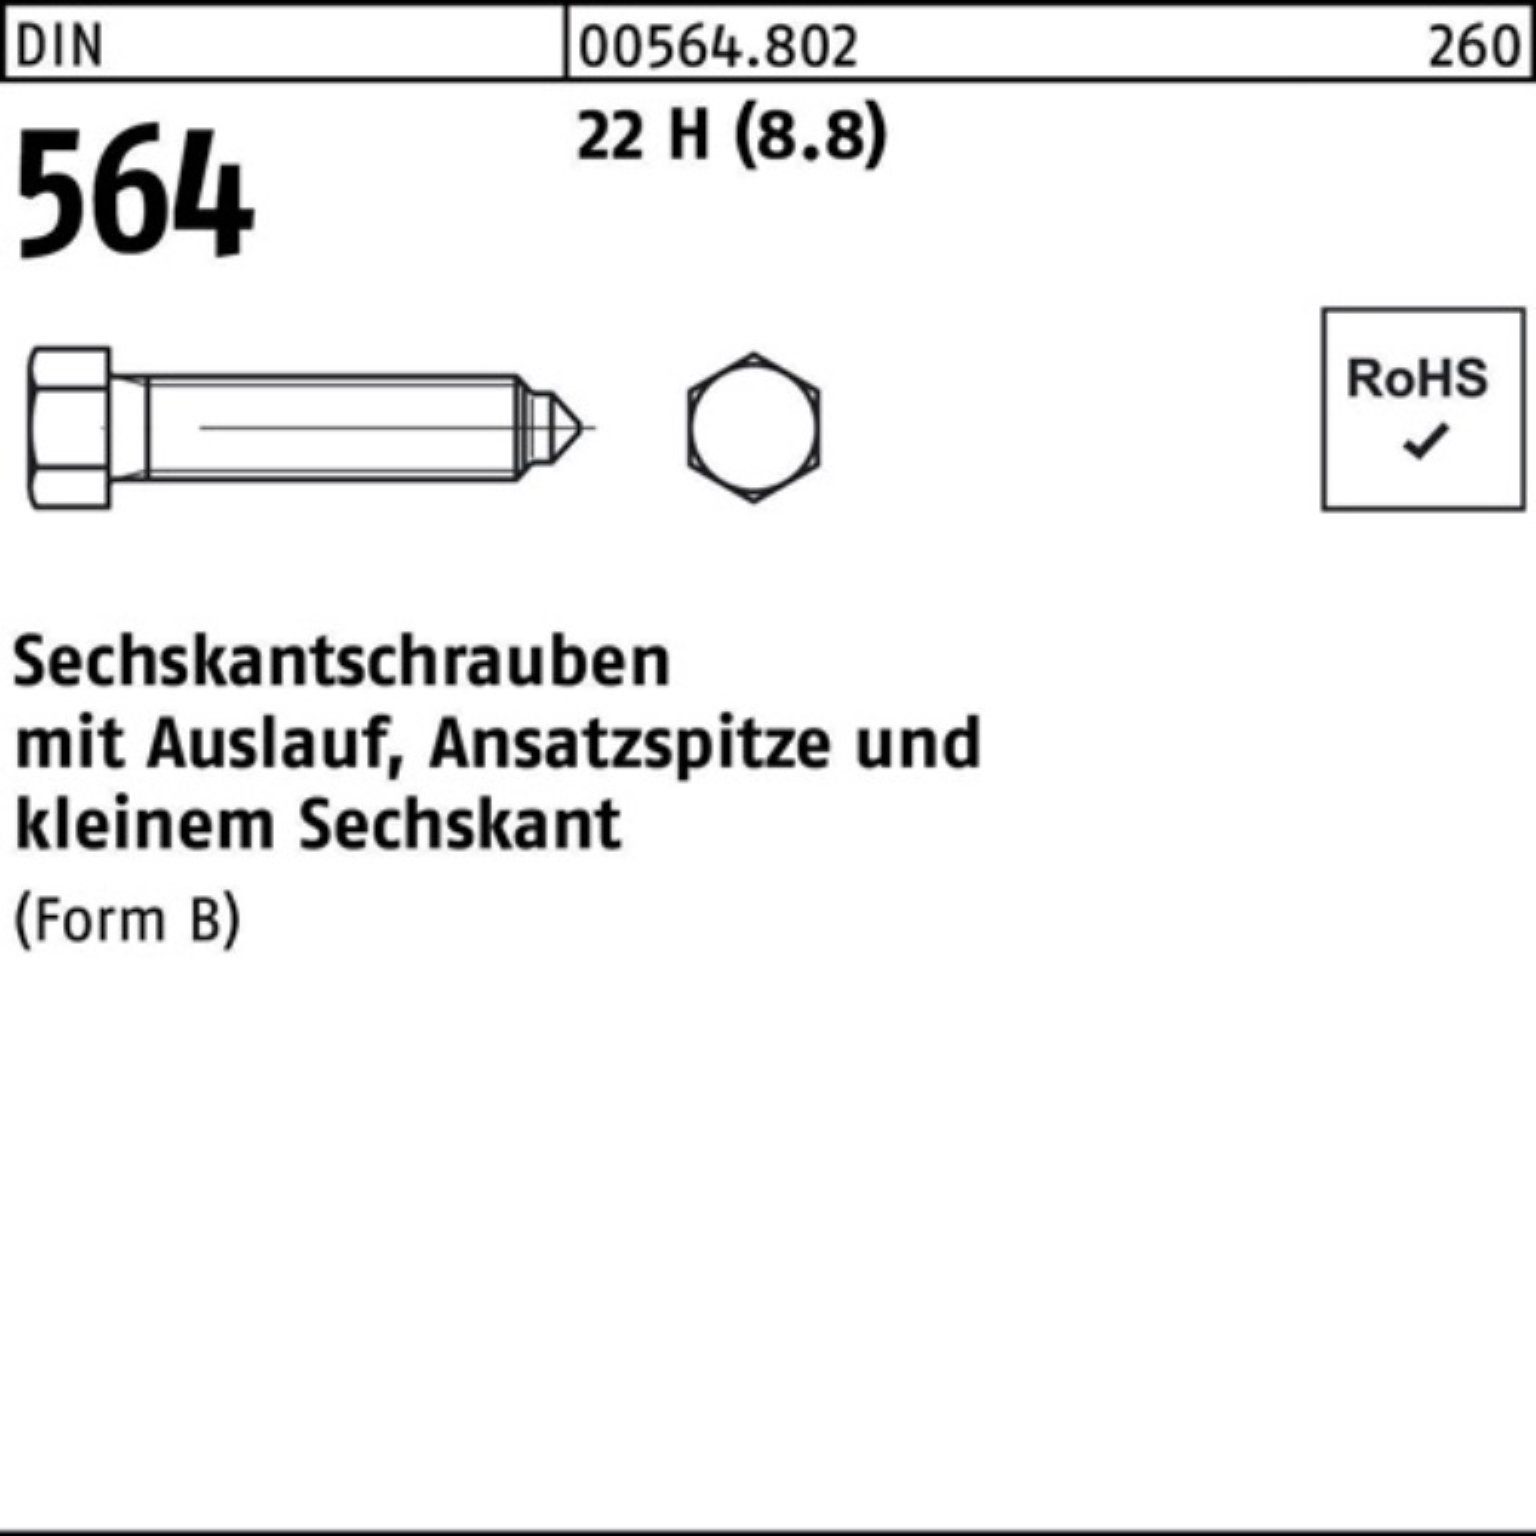 Reyher Sechskantschraube 100er Pack Sechskantschraube DIN 564 Ansatzspitze/Auslauf BM 10x 30 22